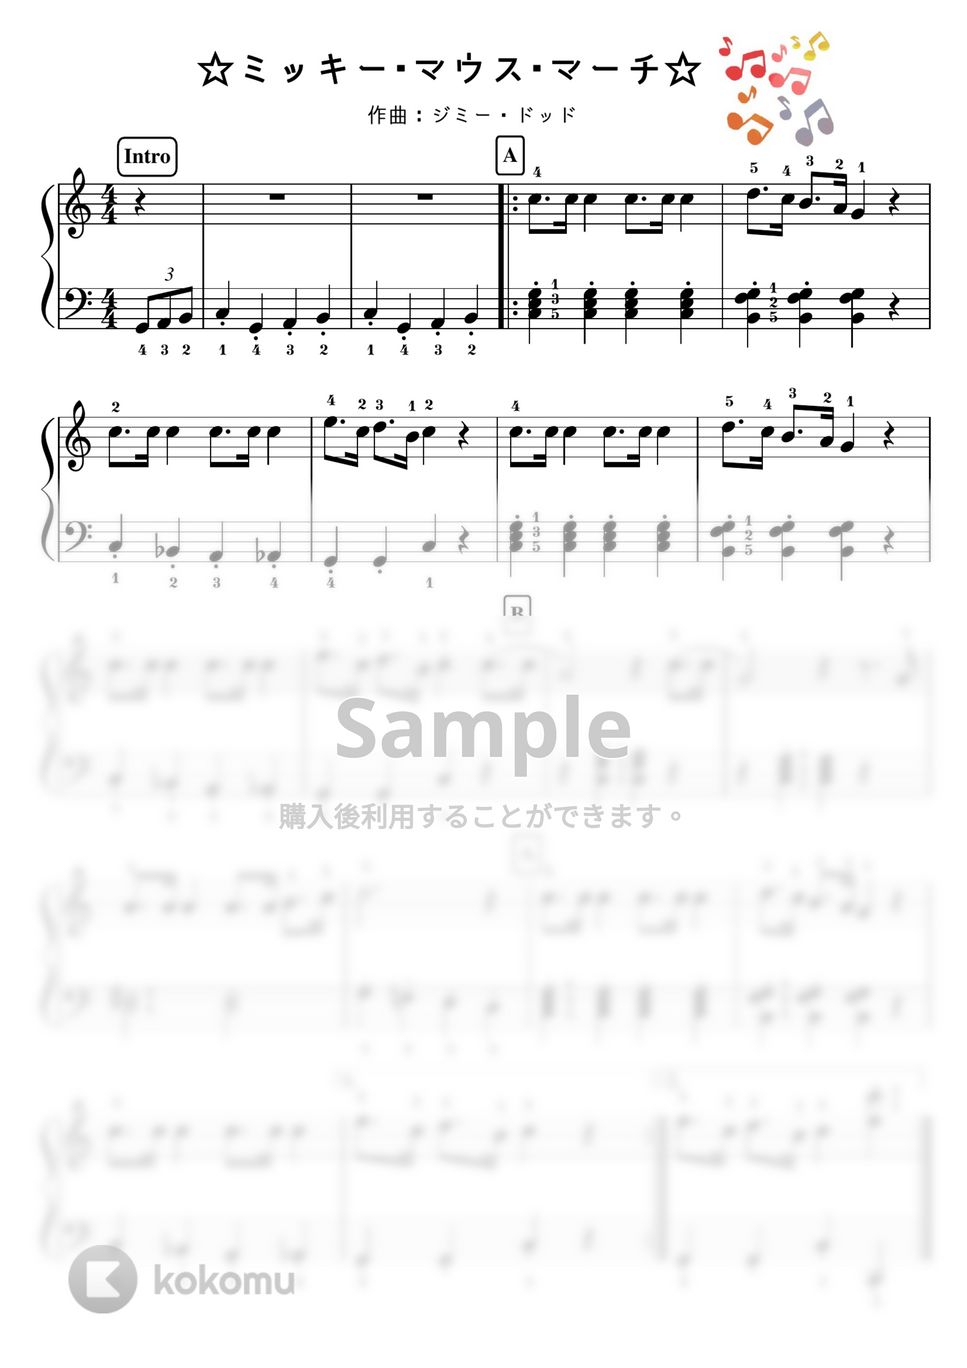 ミッキーマウス（ディズニー） - 【初級】ミッキーマウスマーチ/かんたん２種類 (ディズニー,ミッキー) by ピアノのせんせいの楽譜集